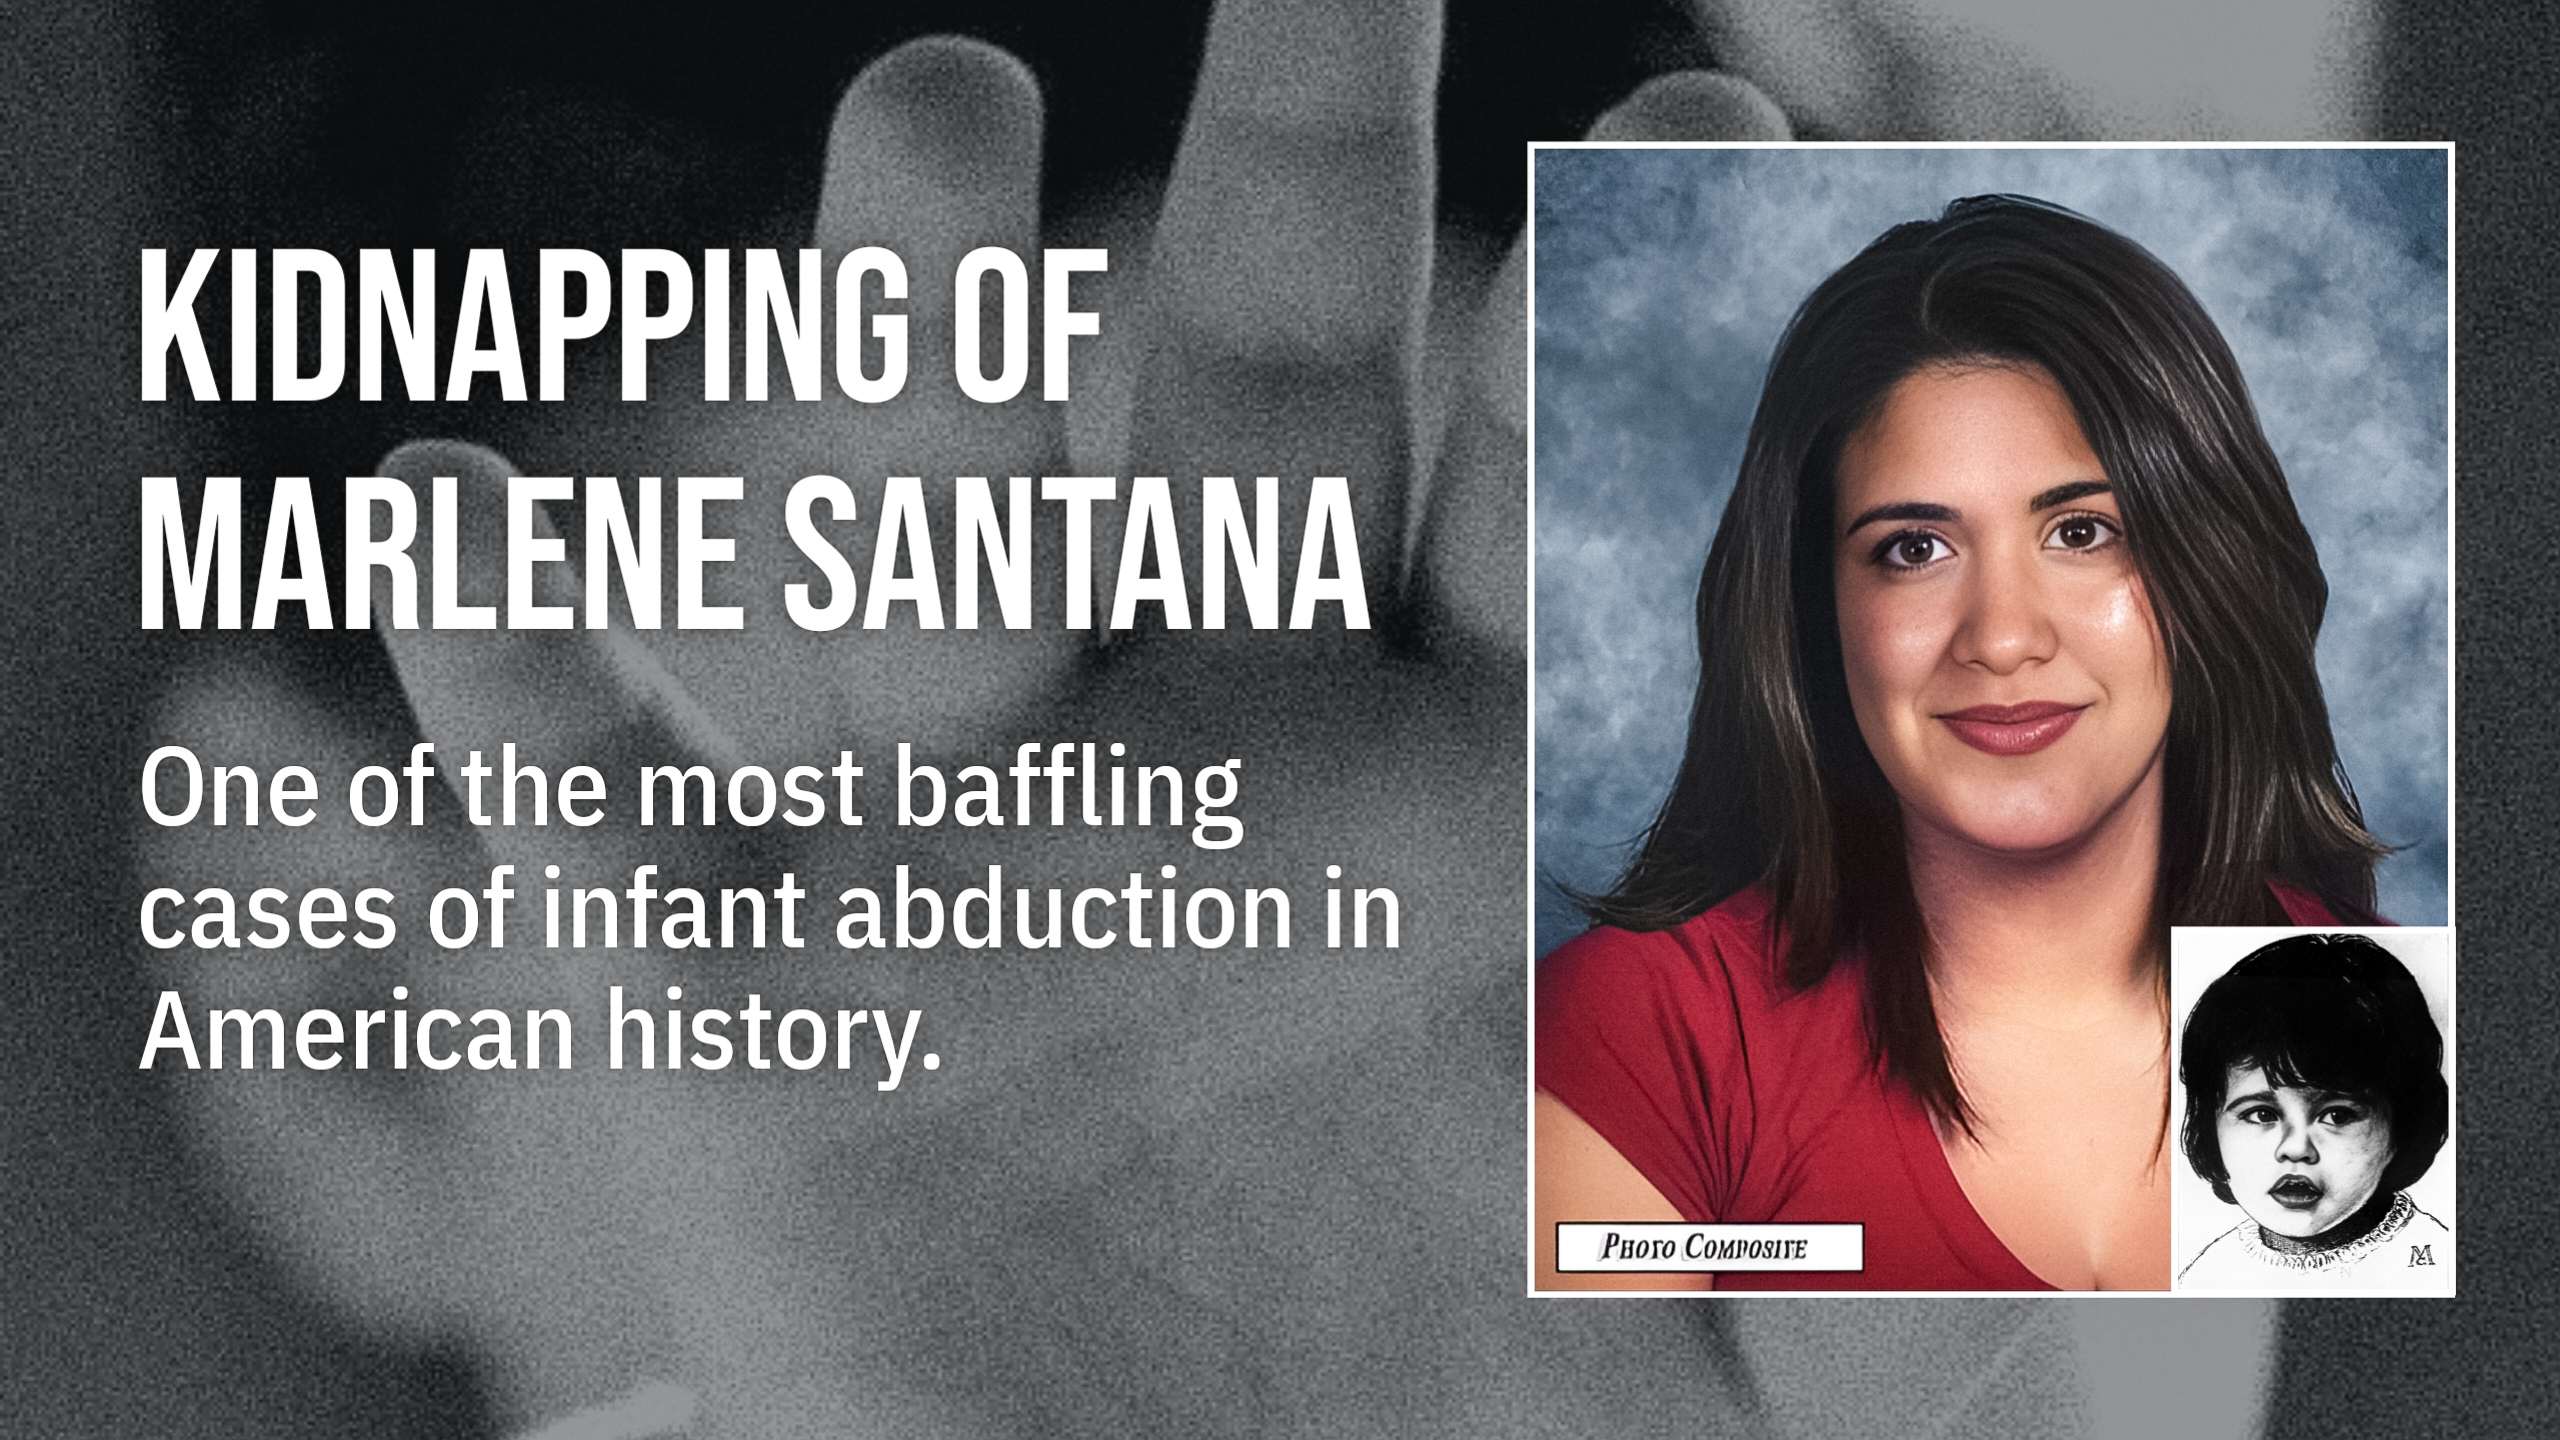 Марлен Сантана: Дело о похищении младенцев в 1985 году до сих пор остается неразгаданной тайной